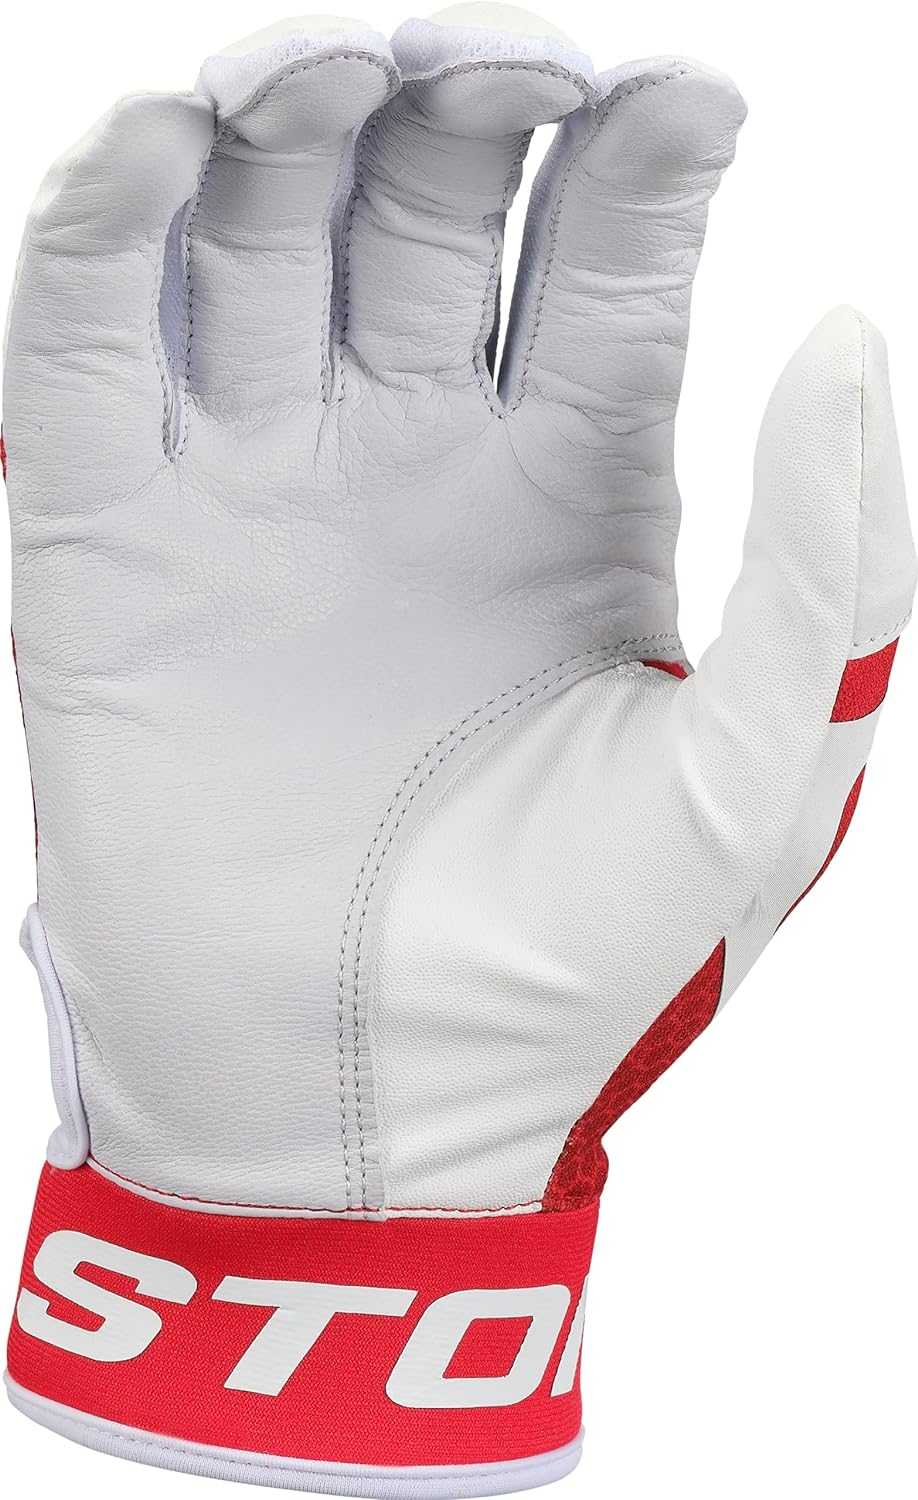 Easton MAV GT Batting Gloves - White Red - HIT a Double